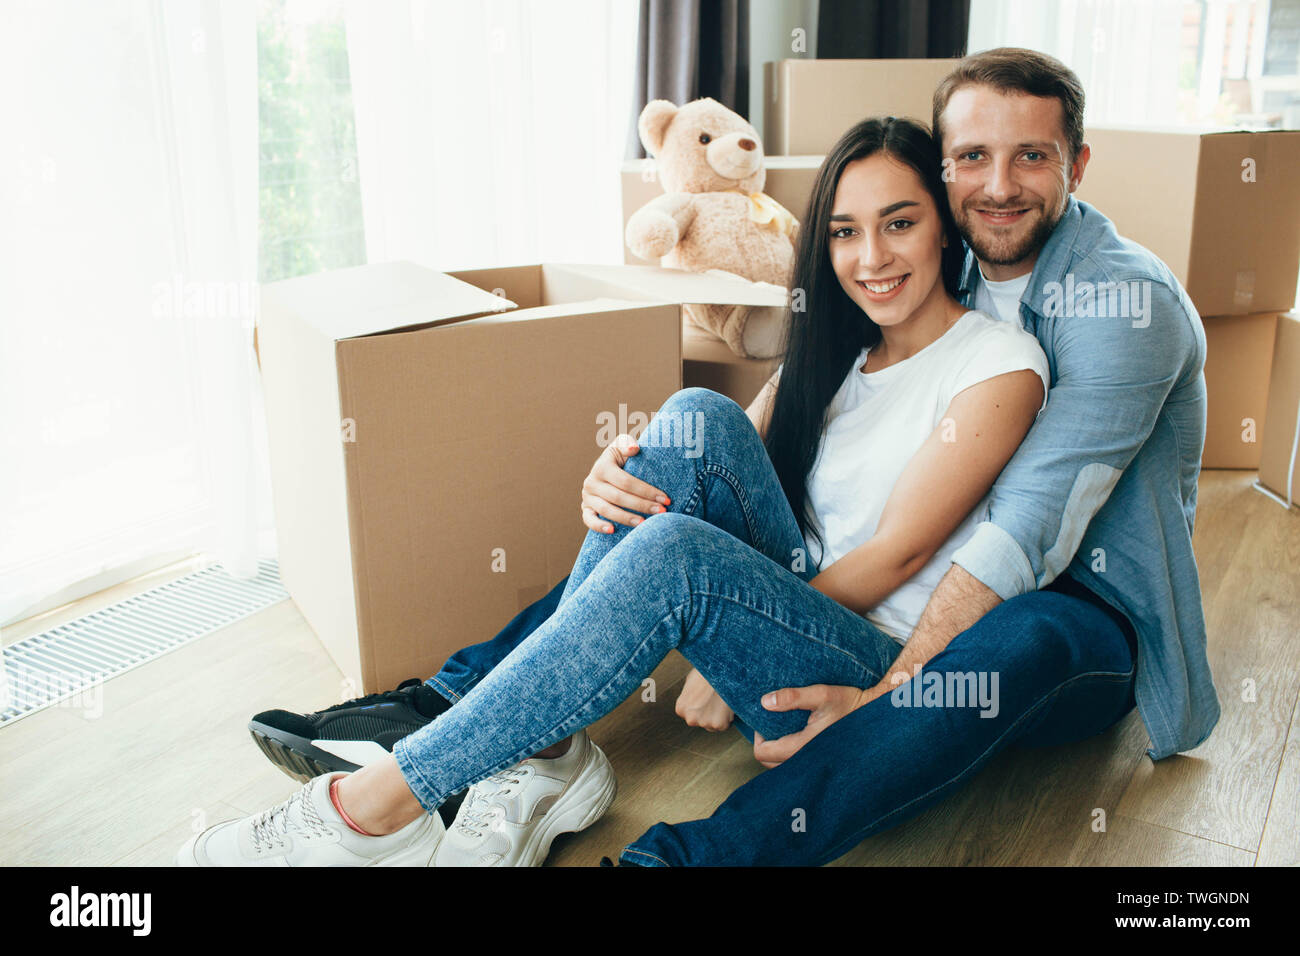 Heureux Couple hugging and sitting on floor dans leur nouvelle maison avec de nombreux cartons on background Banque D'Images